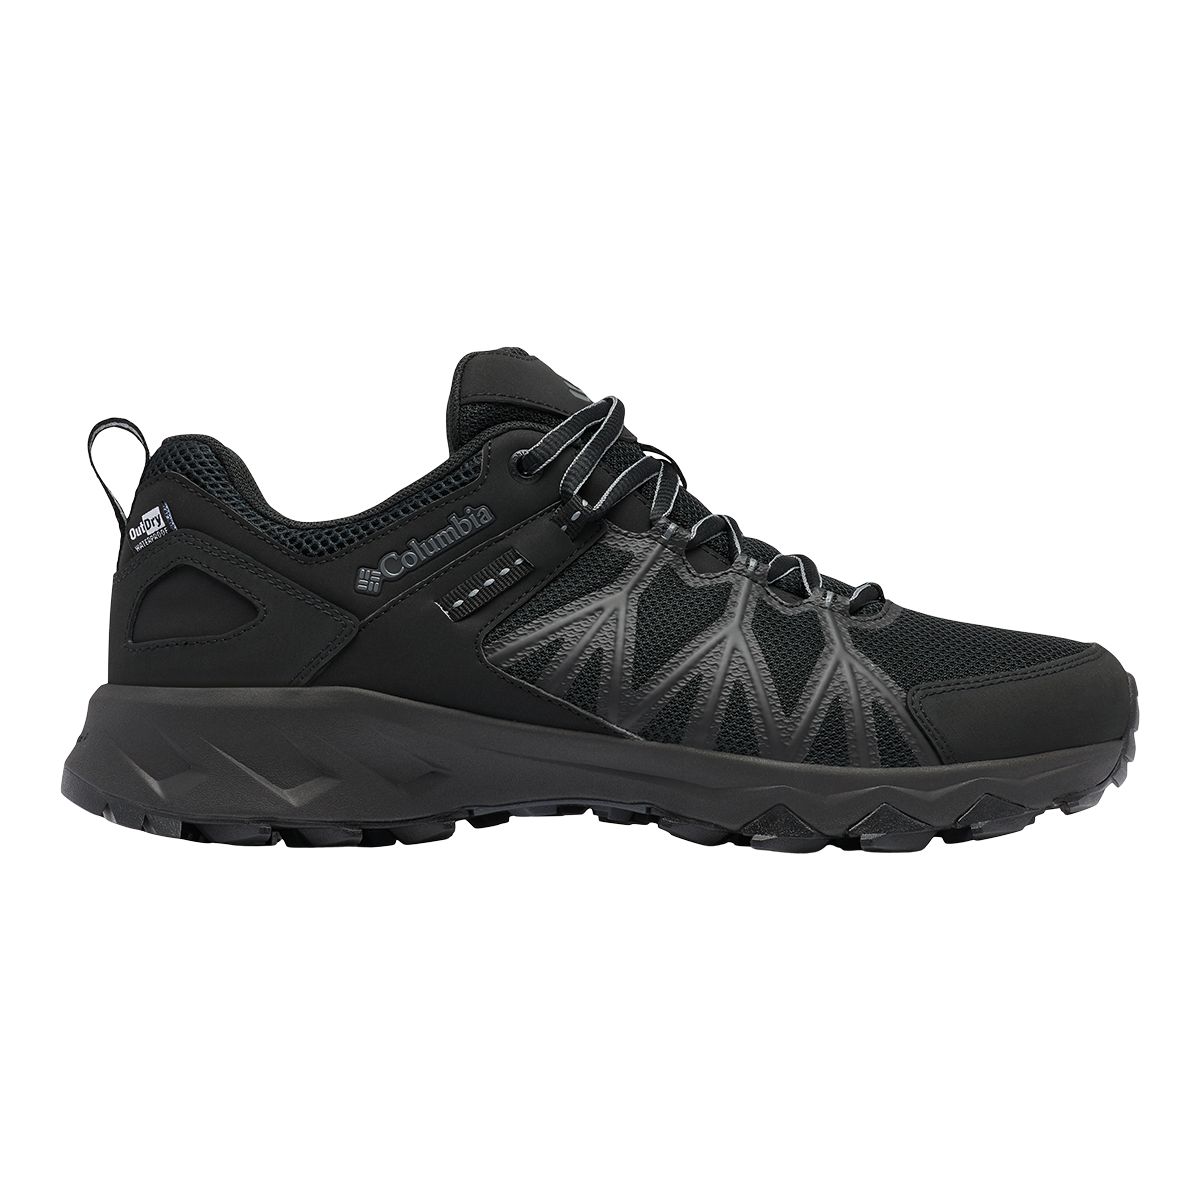 Columbia Men's Peakfreak II OutDry Hiking Shoes, Waterproof, Breathable